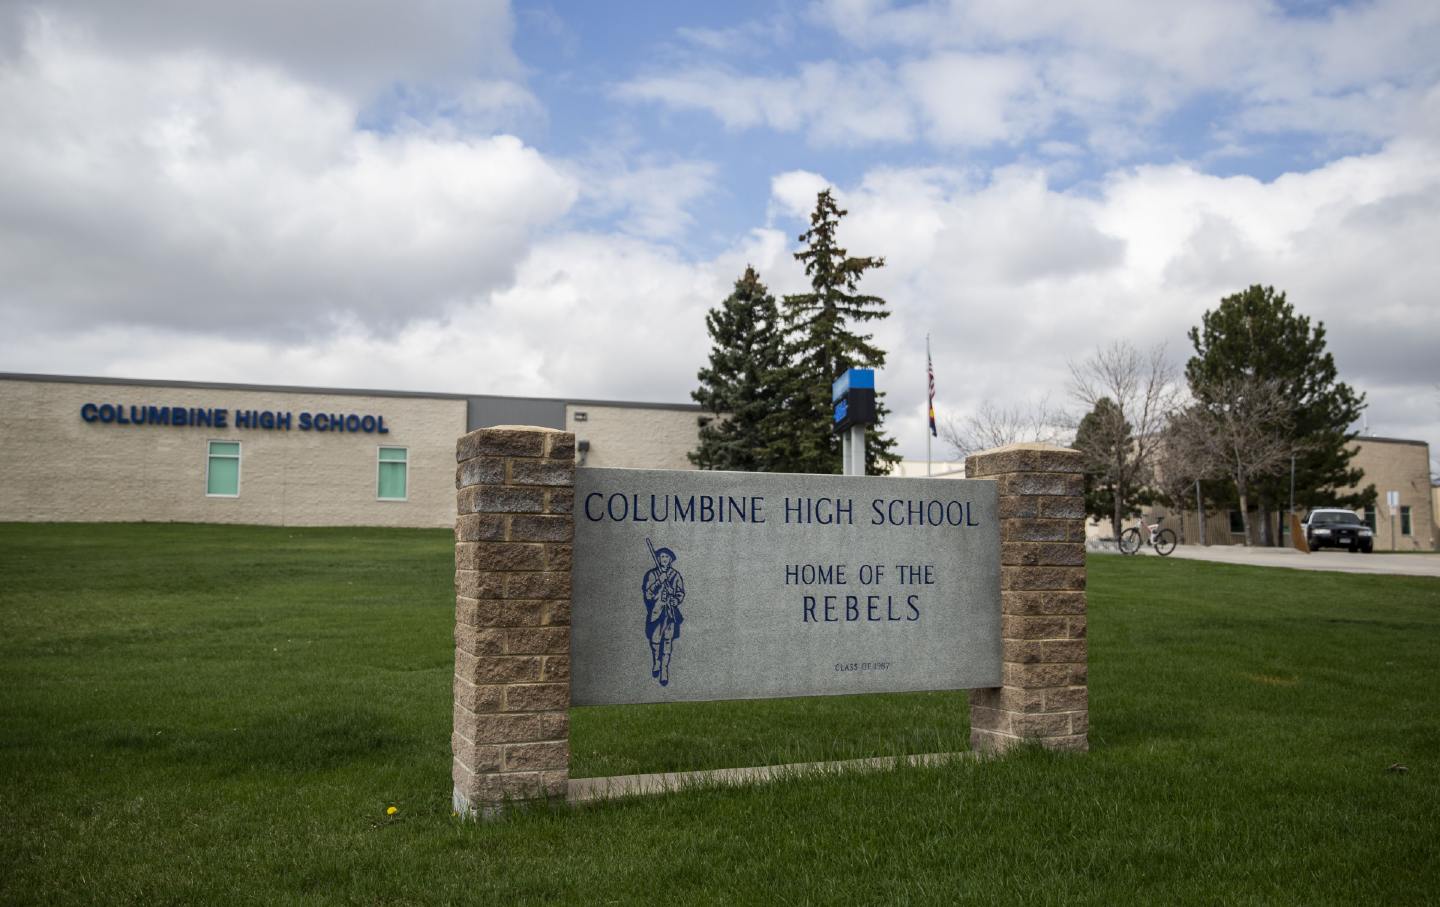 Am 17. April 2019 patrouillierte die Polizei vor der Columbine High School in Littleton, Colorado, wo 1999 die tödliche Schießerei an einer Schule stattfand.